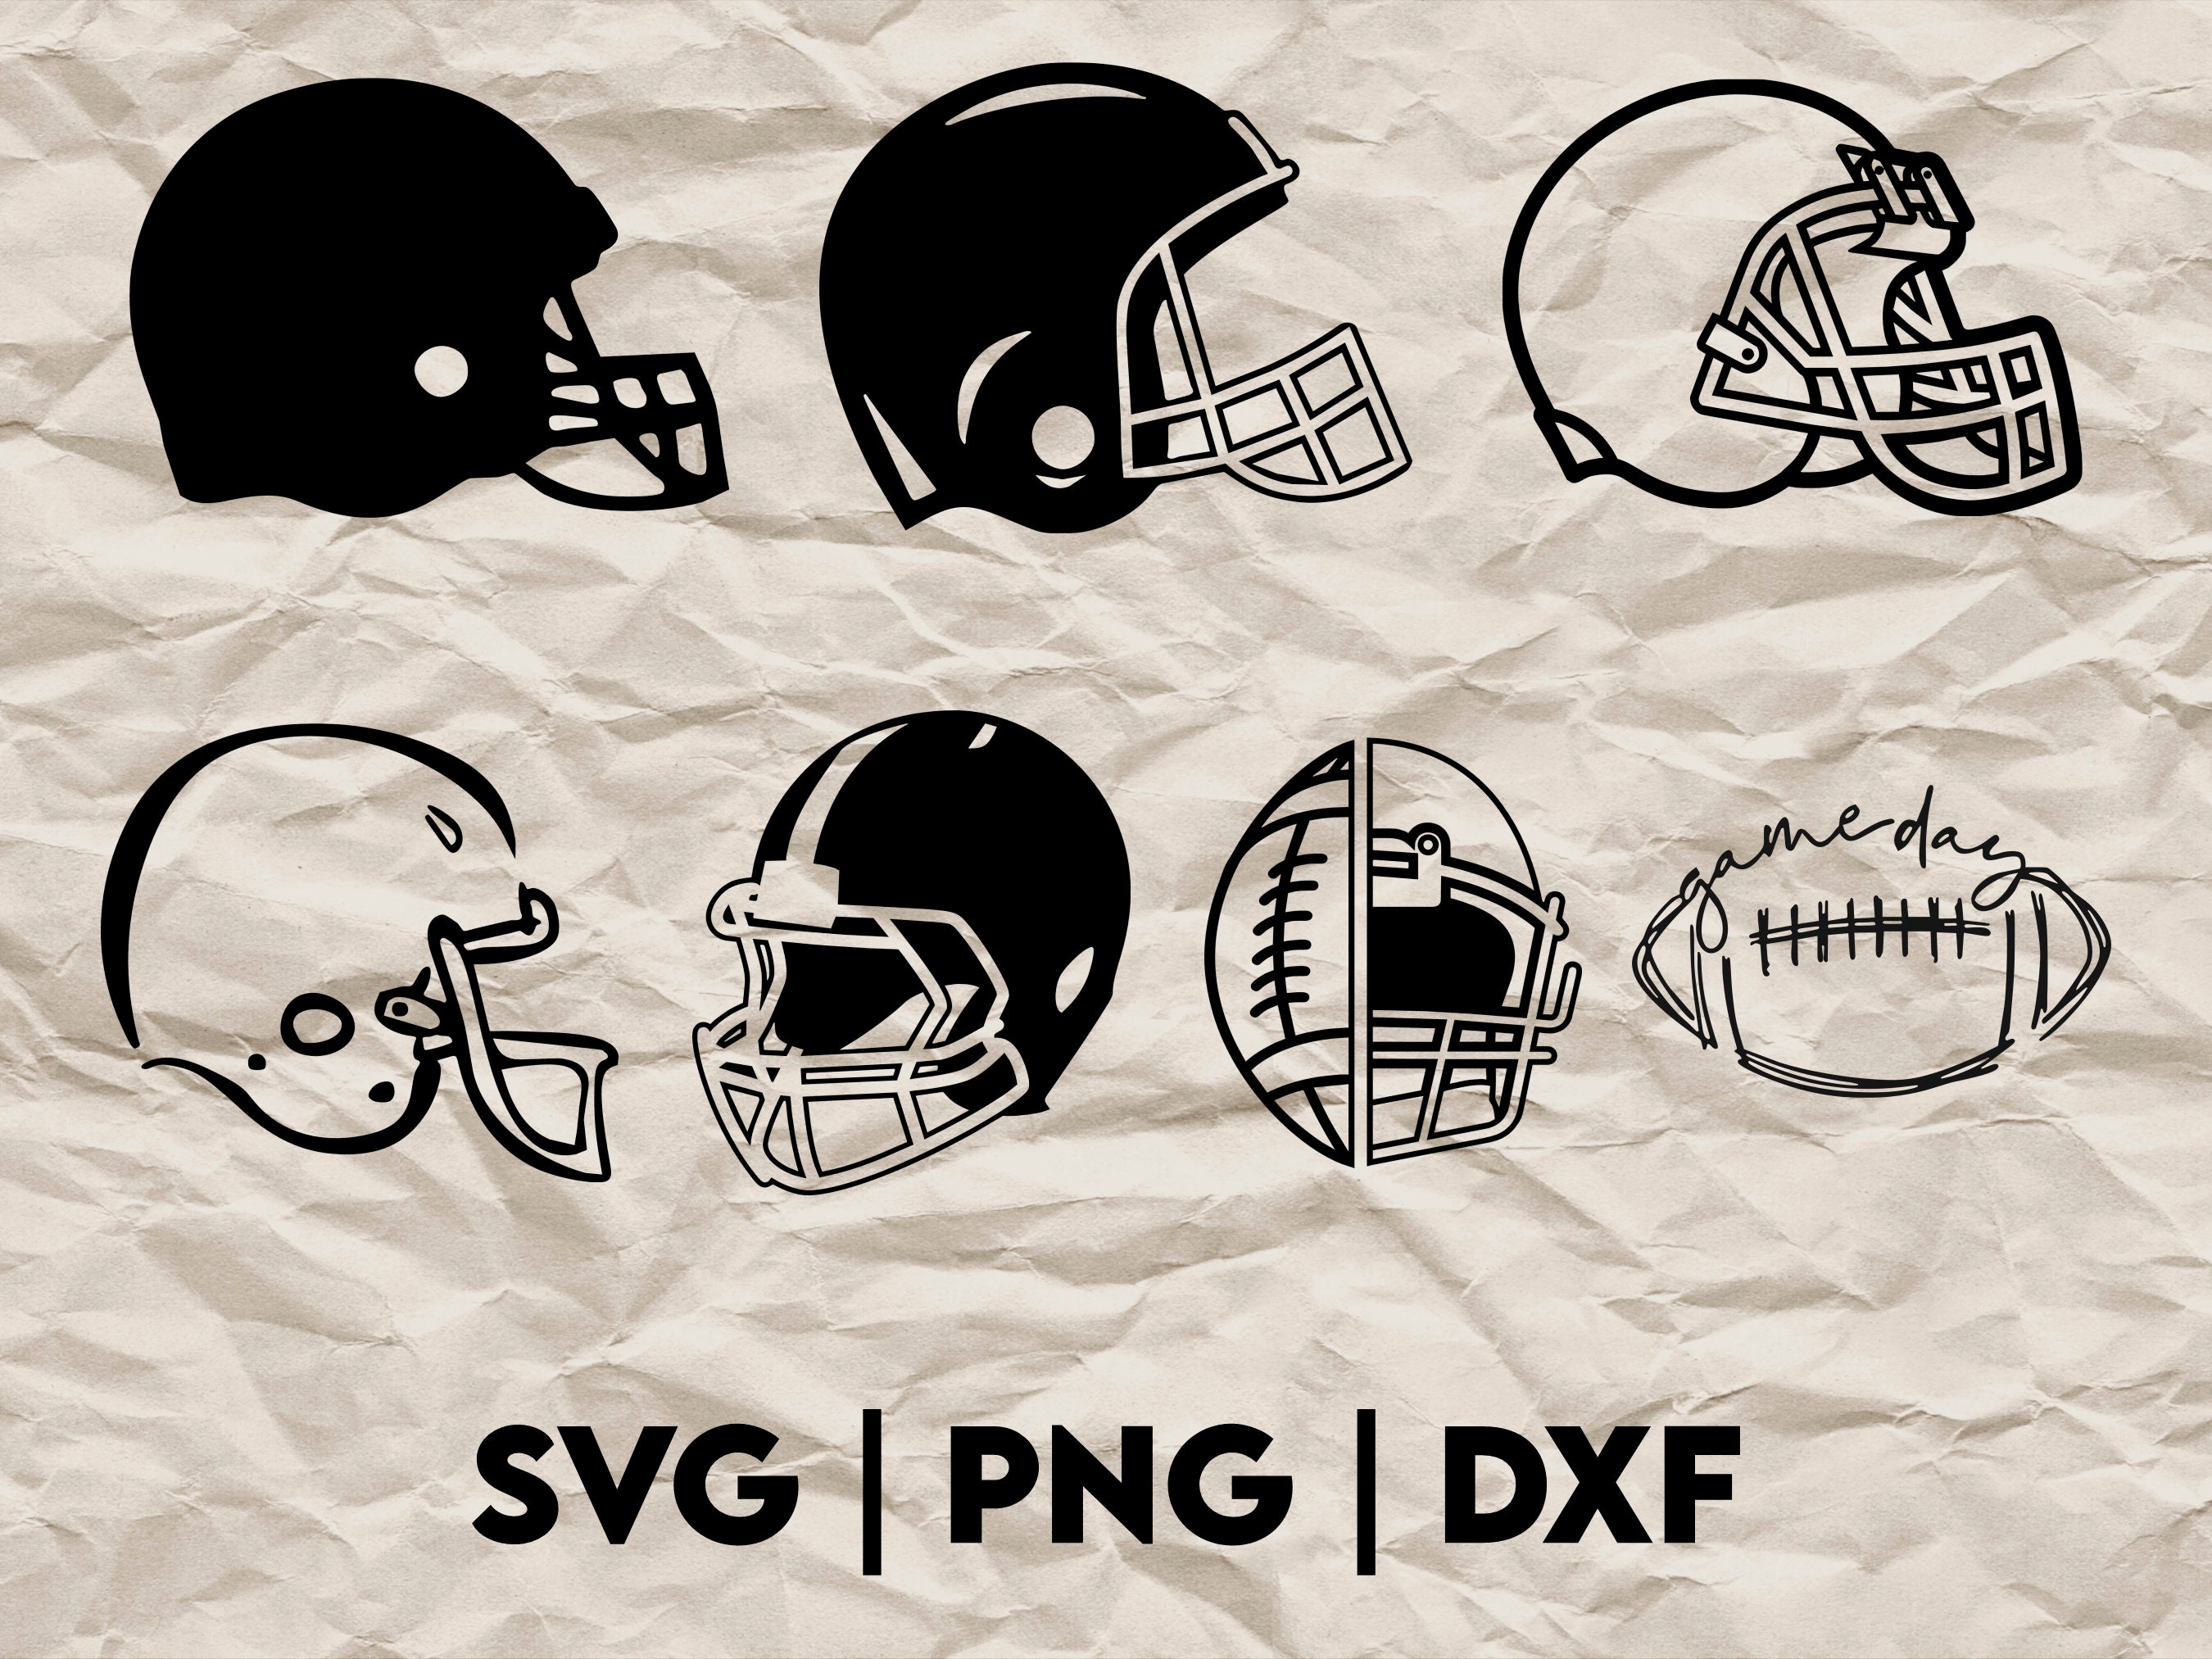 Football Team Silhouette, American Football Team Svg, Football Player Svg  for Cricut, Vinyl Cutter, Decal Sticker, T-shirt File. 